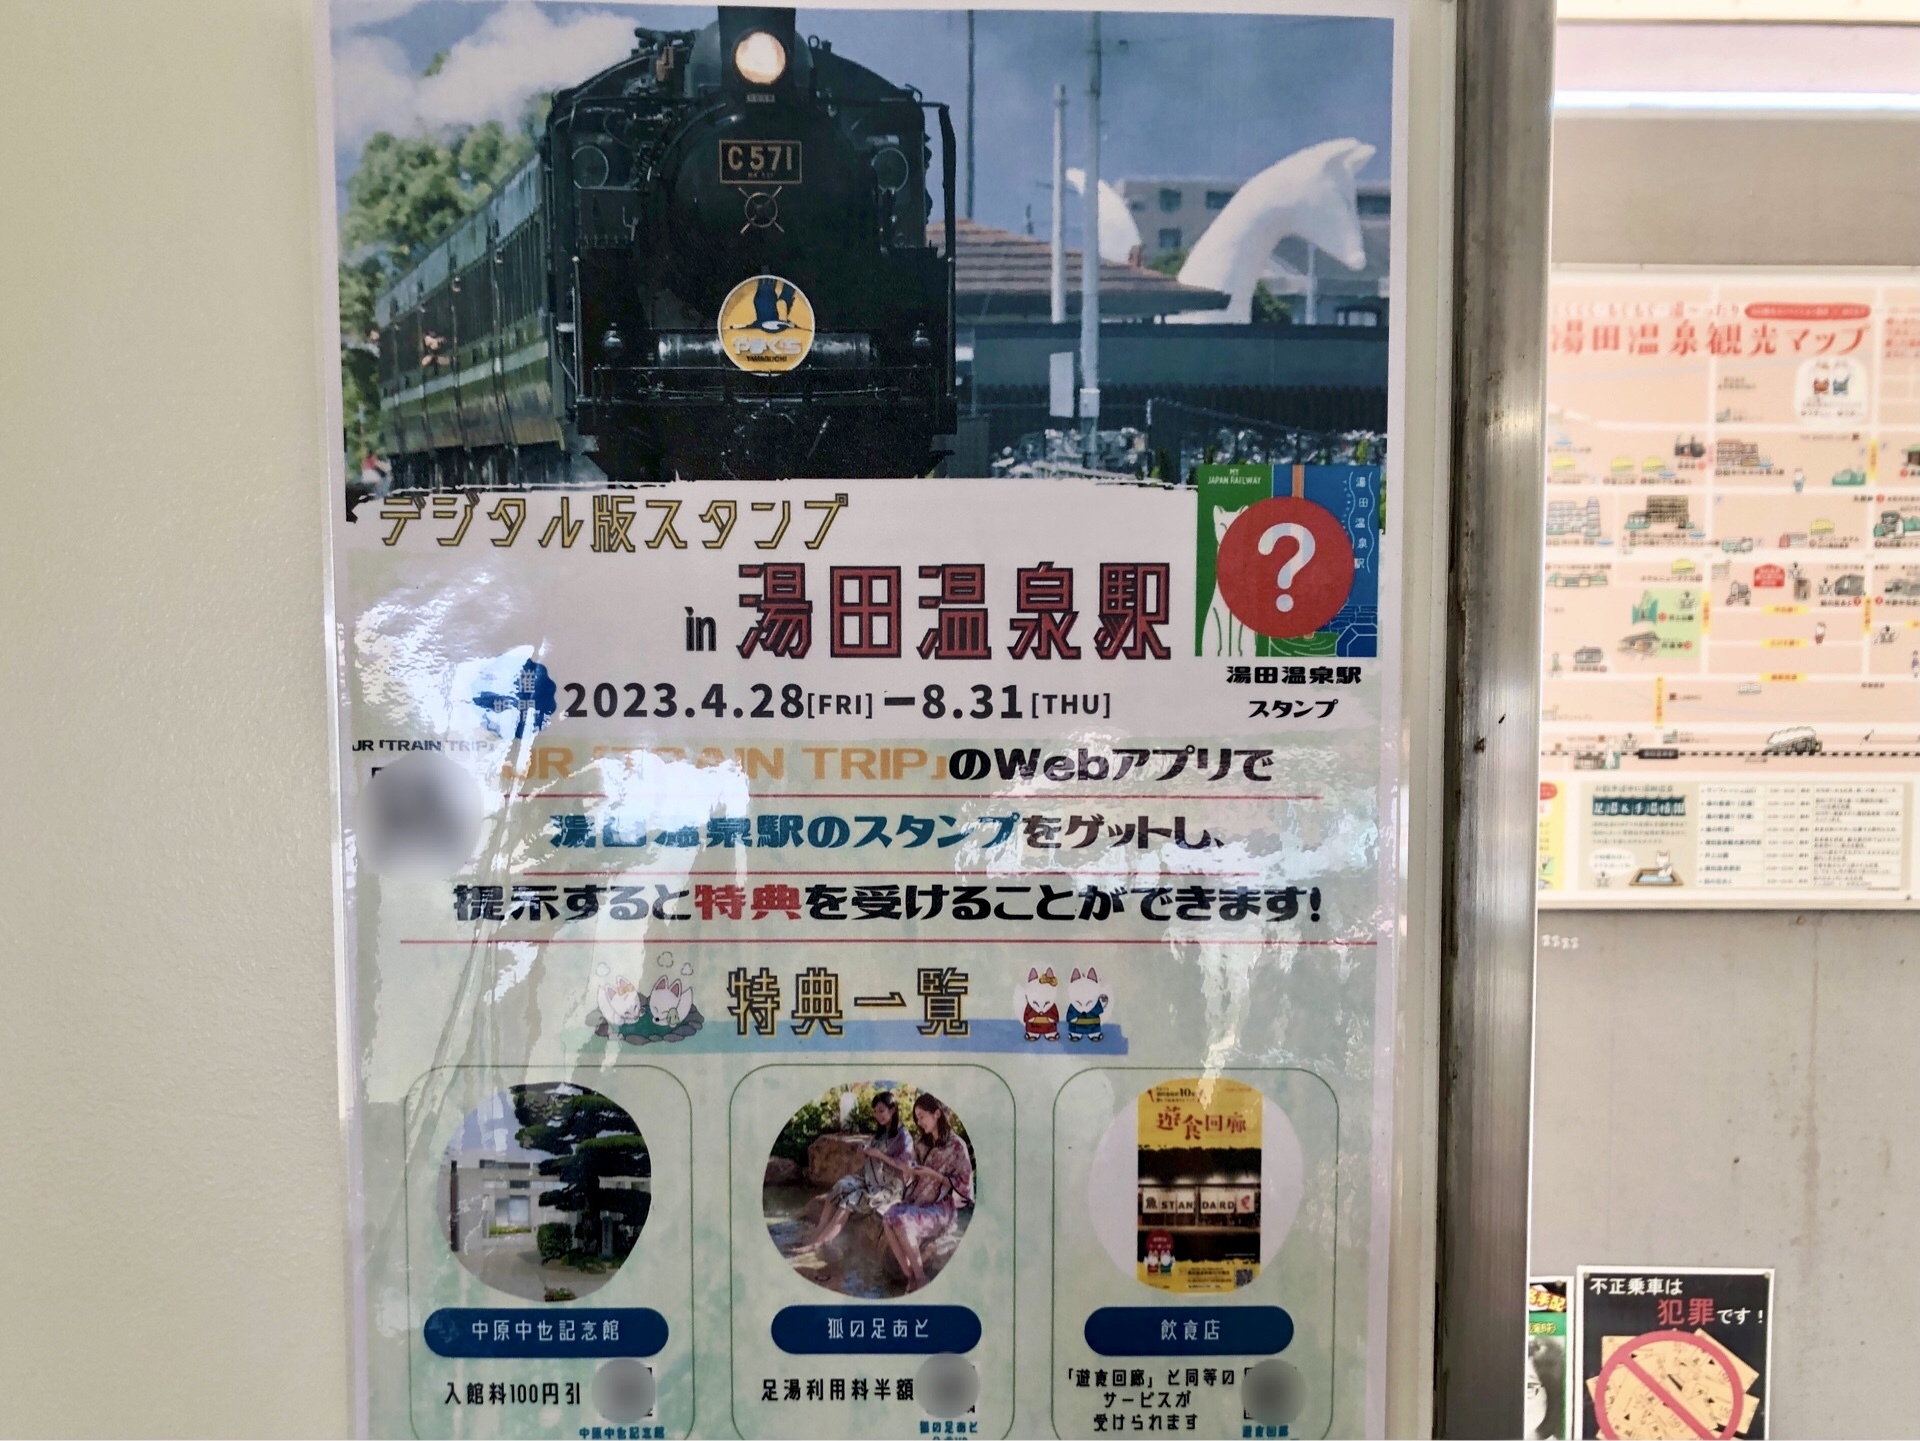 「デジタル版スタンプin湯田温泉駅」のポスターです。